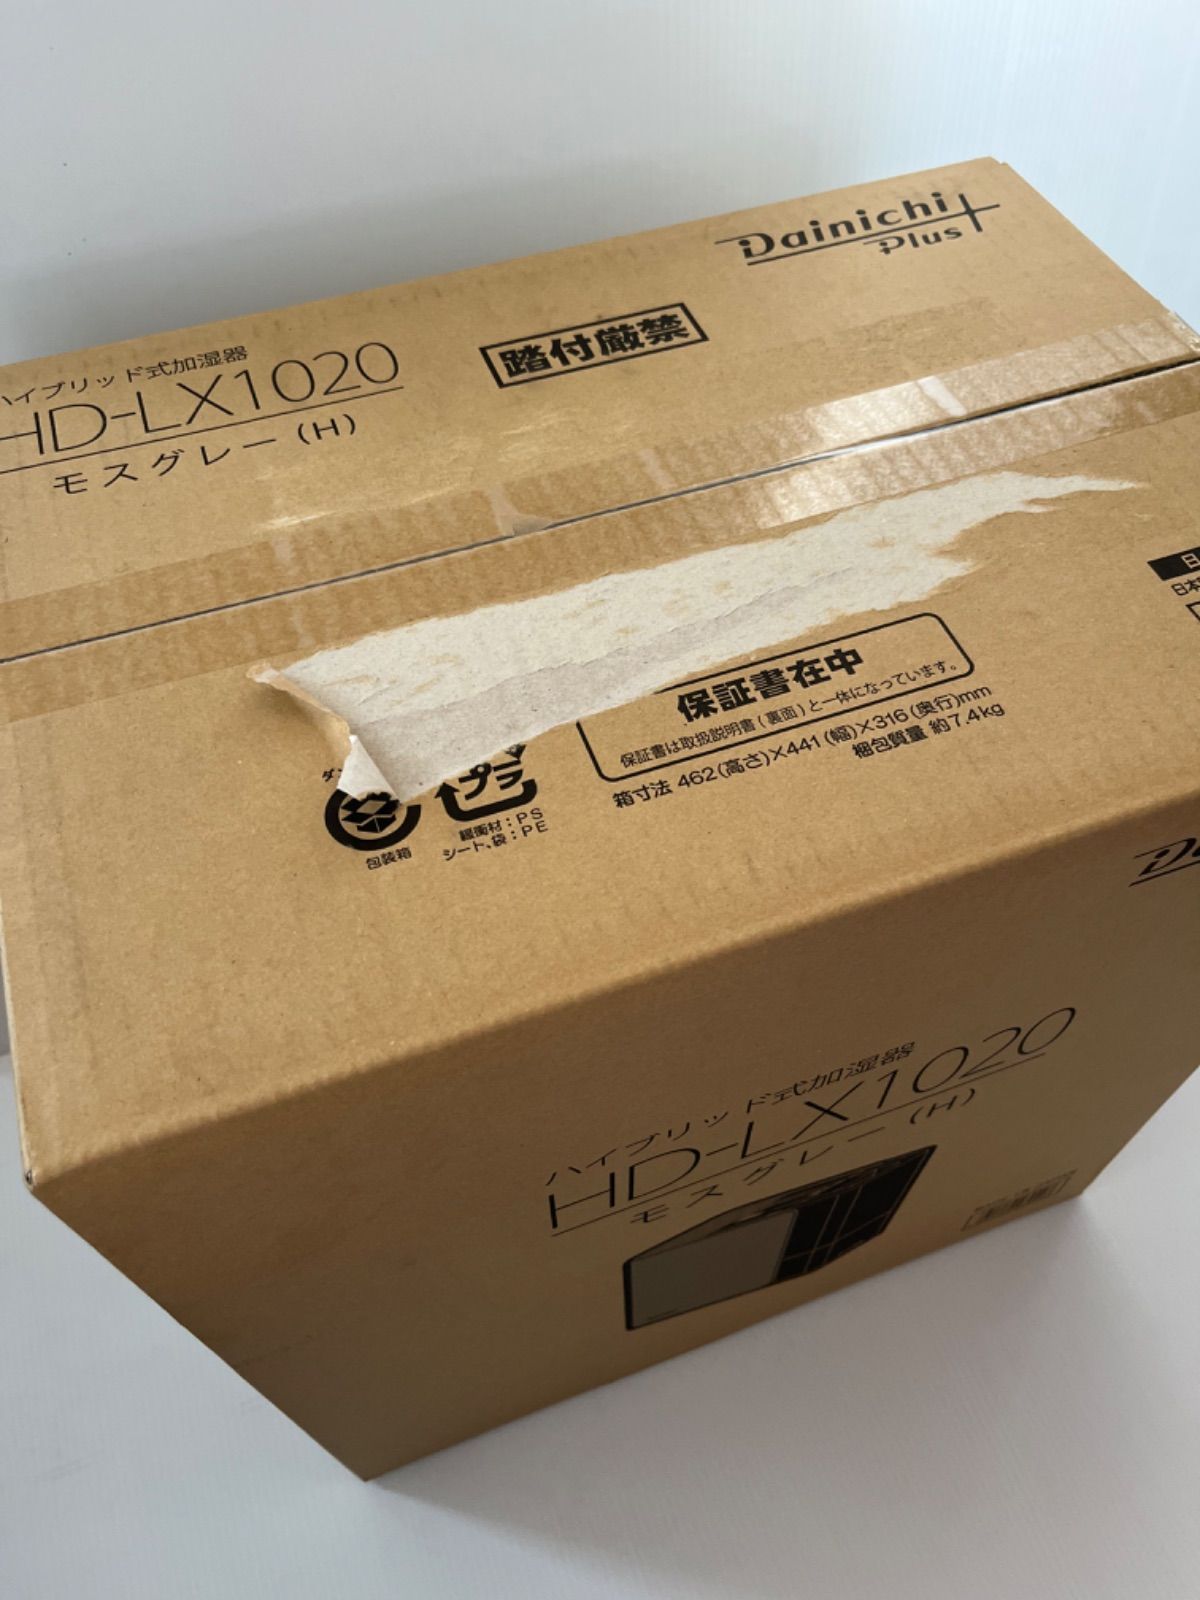 ダイニチ 加湿器 Dainichi HD-LX1020 - サクドウ - メルカリ